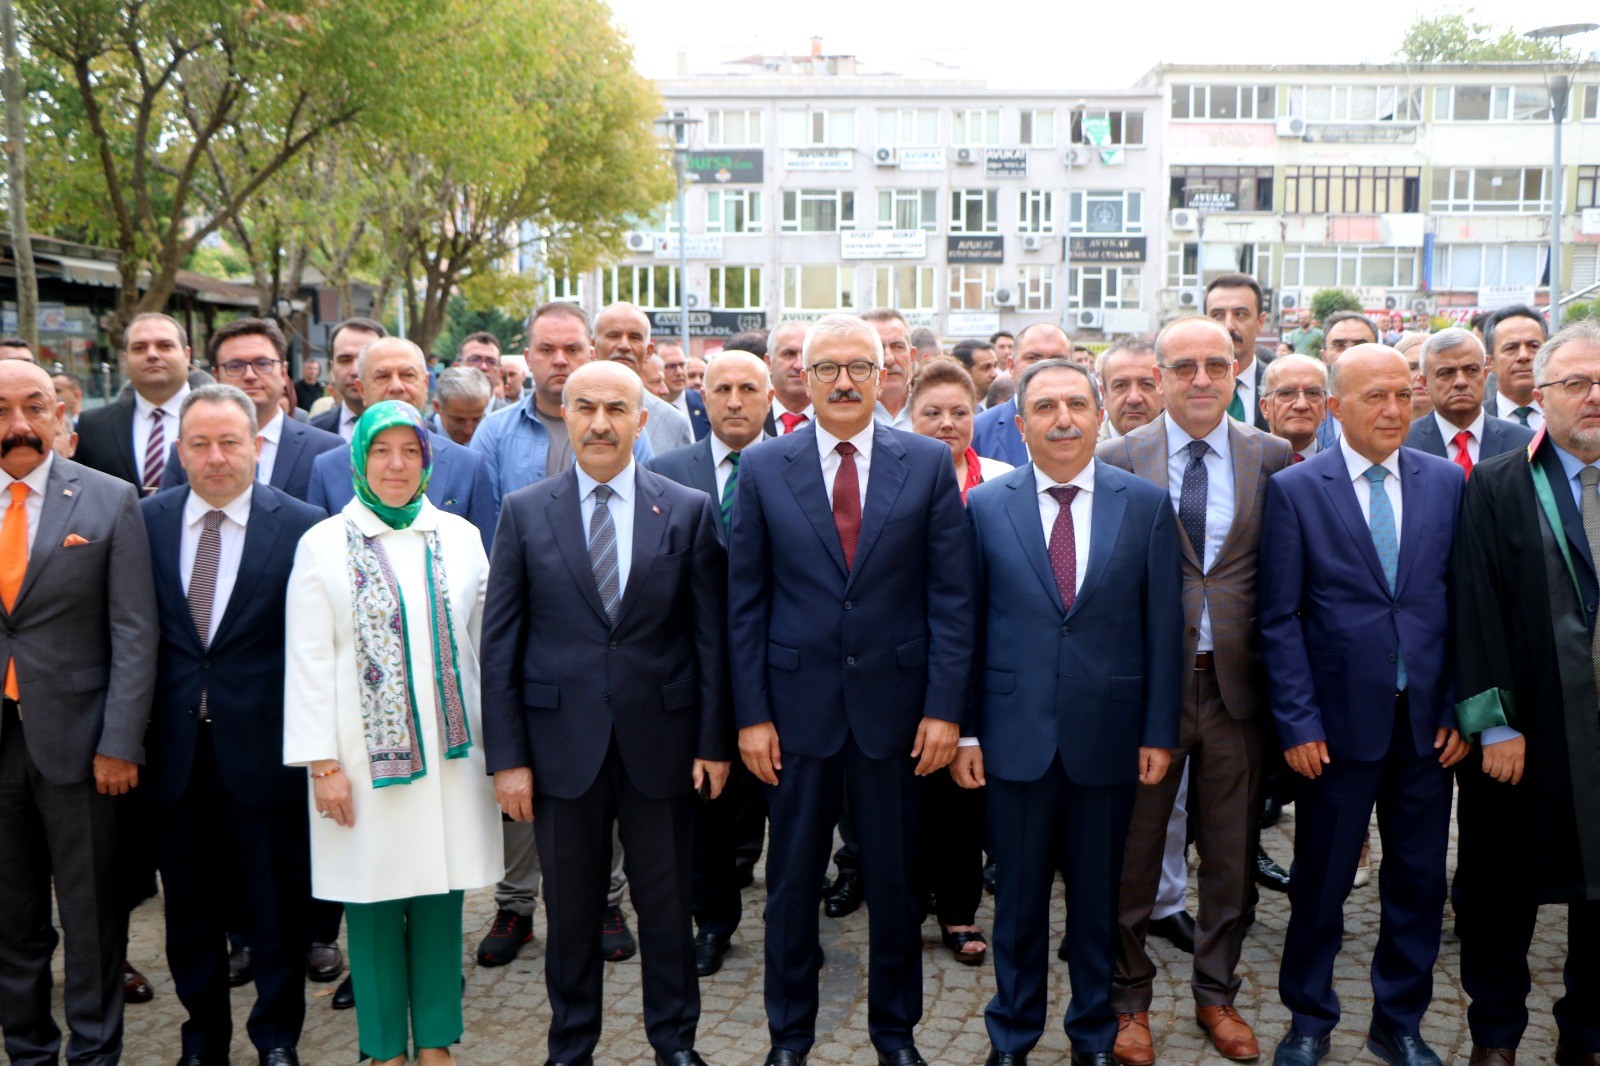 Bursa’da yeni Adli Yıl törenle başladı